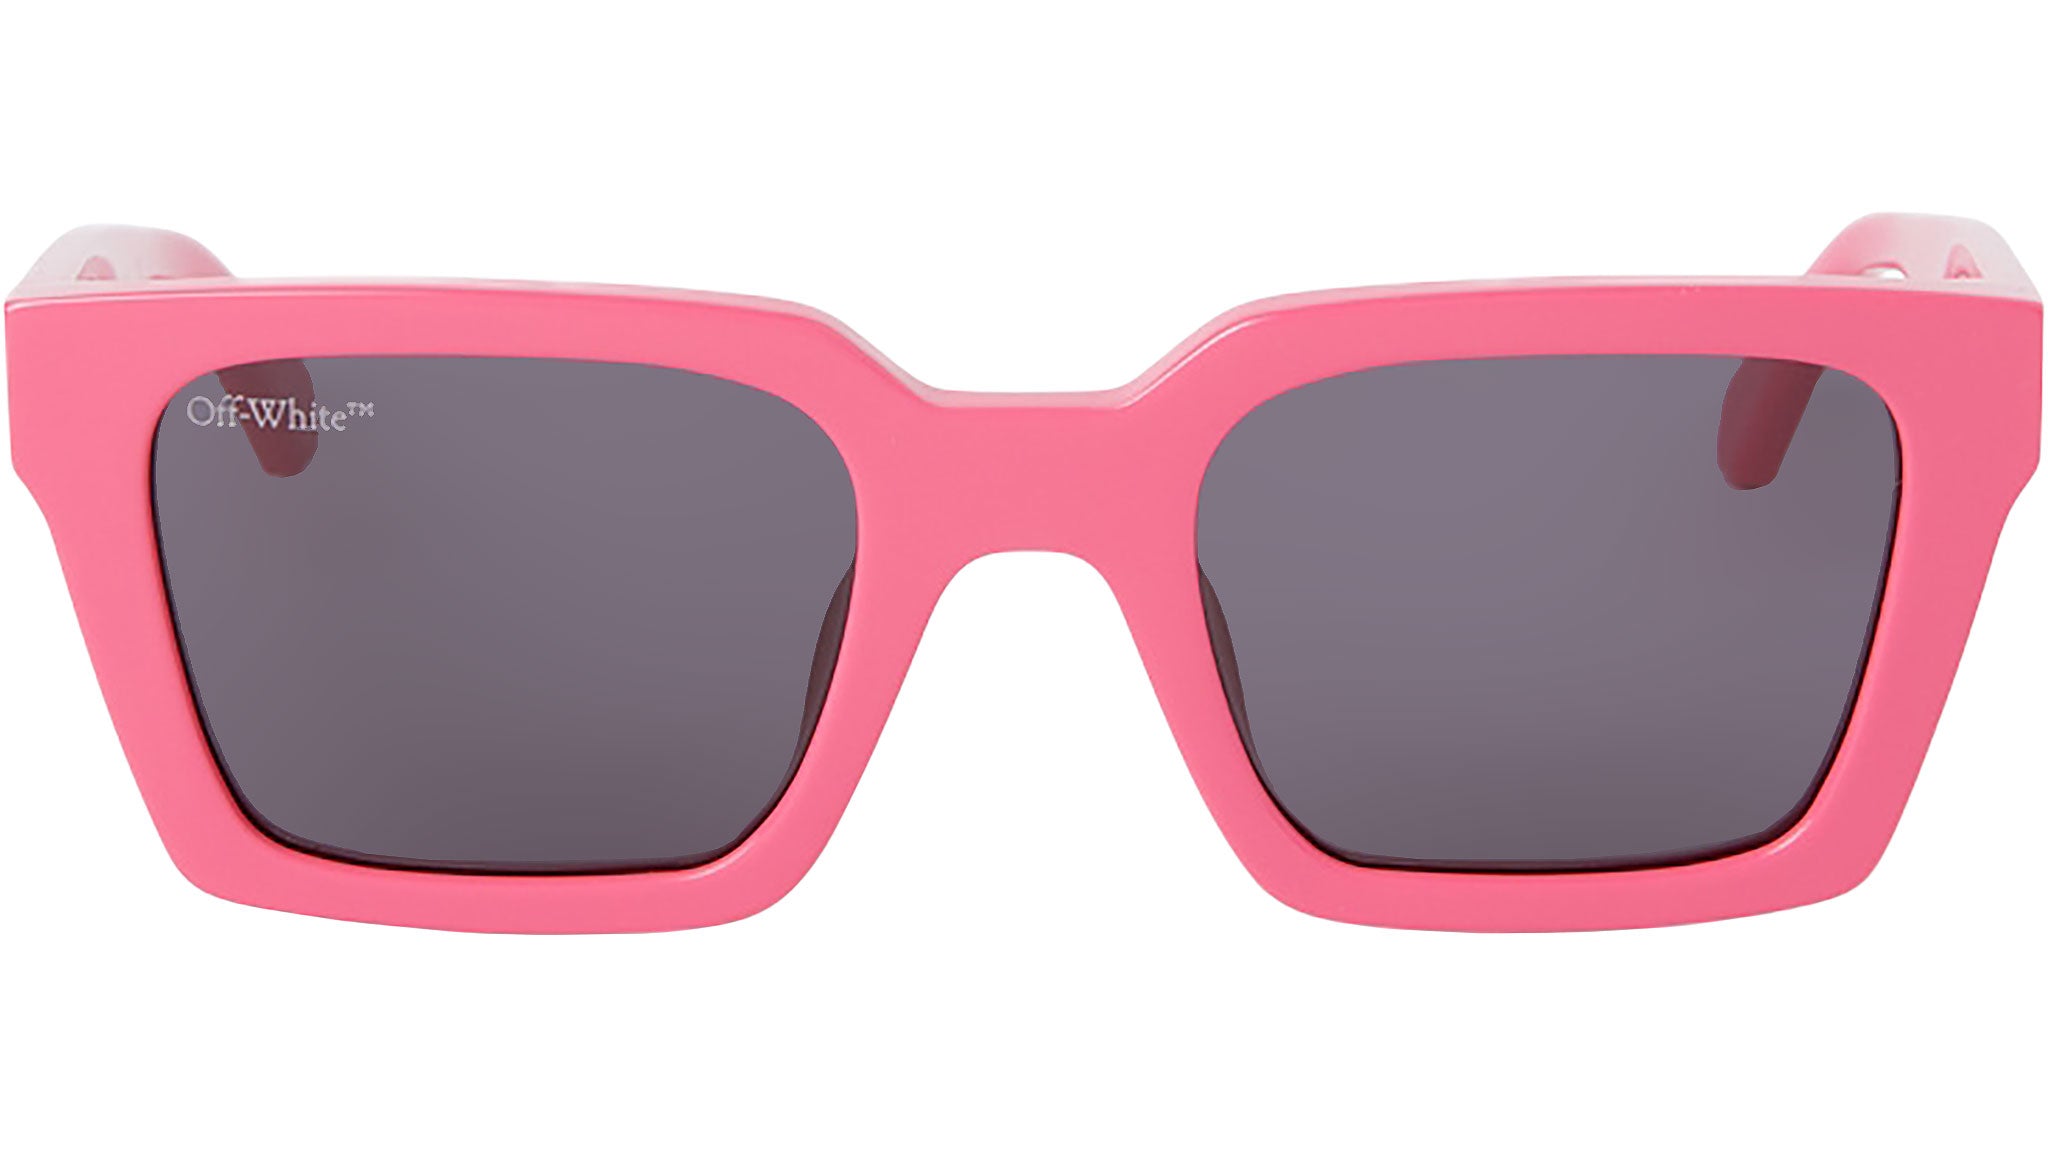 Palermo - Sunglasses - Off-White